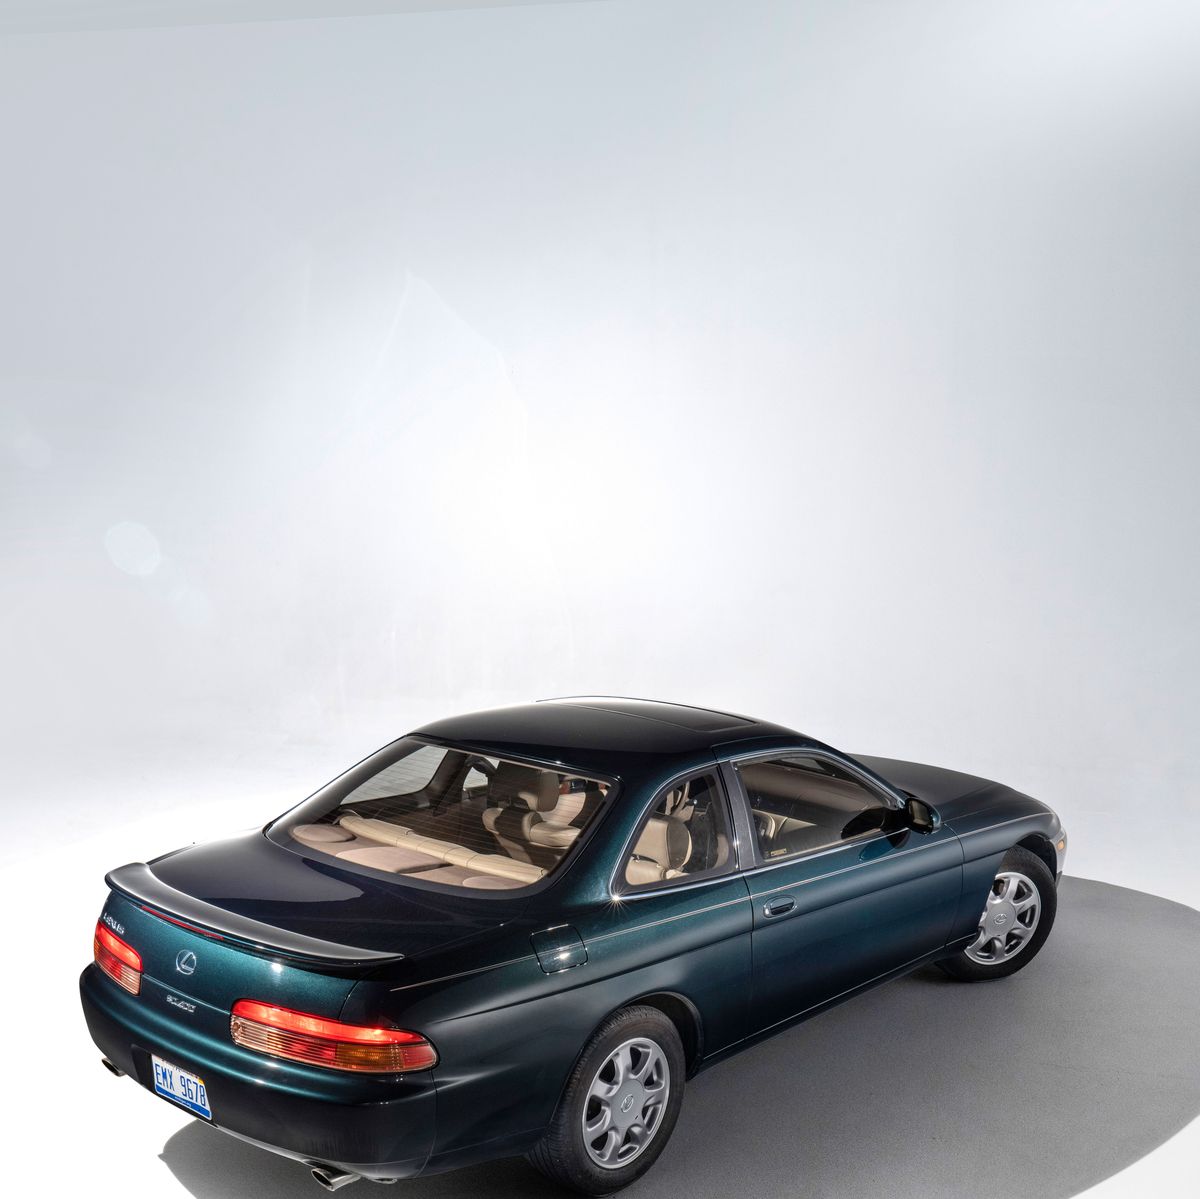 1998 Lexus SC 400 Review & Ratings